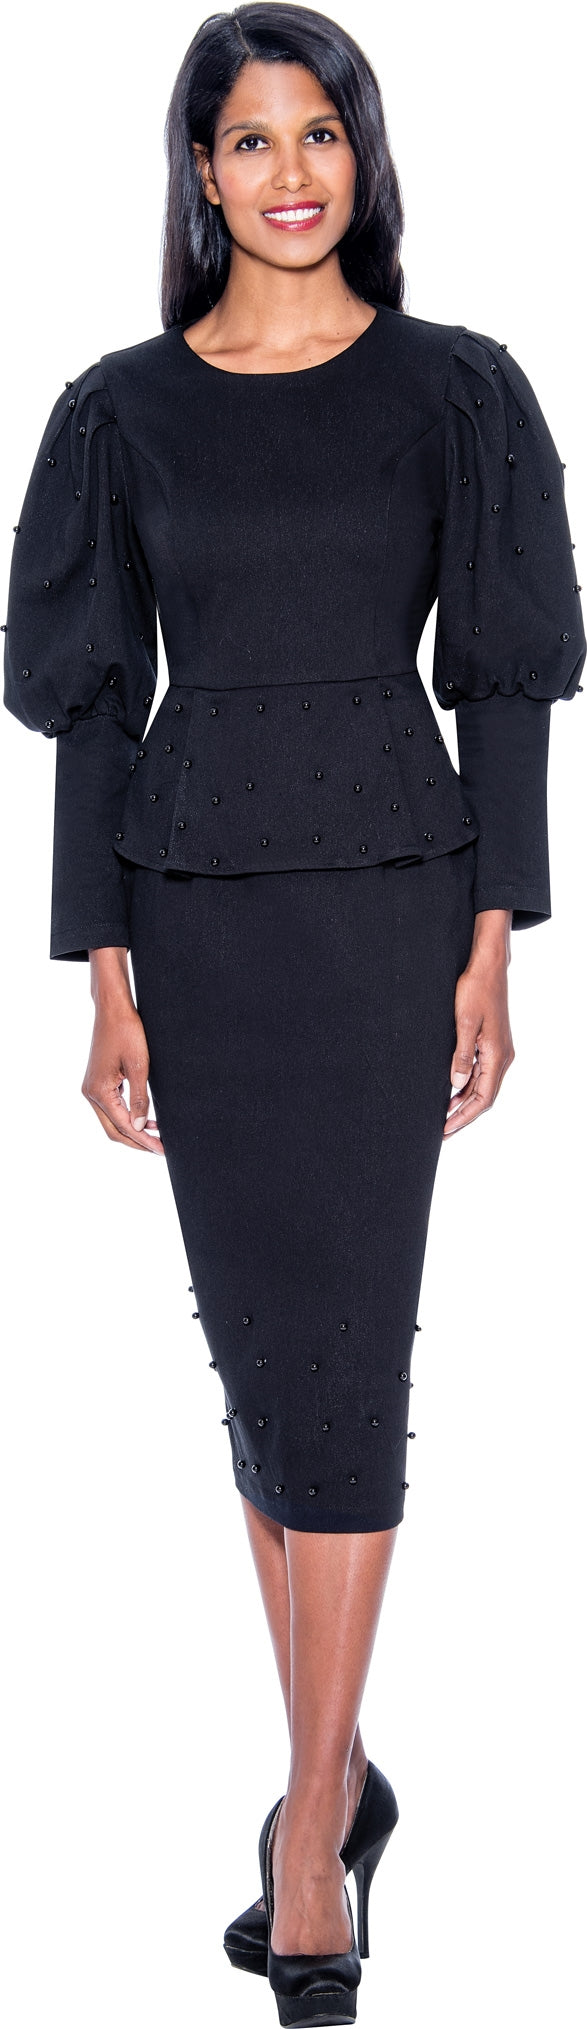 Devine Sport Denim Skirt Suit 63682 - Church Suits For Less